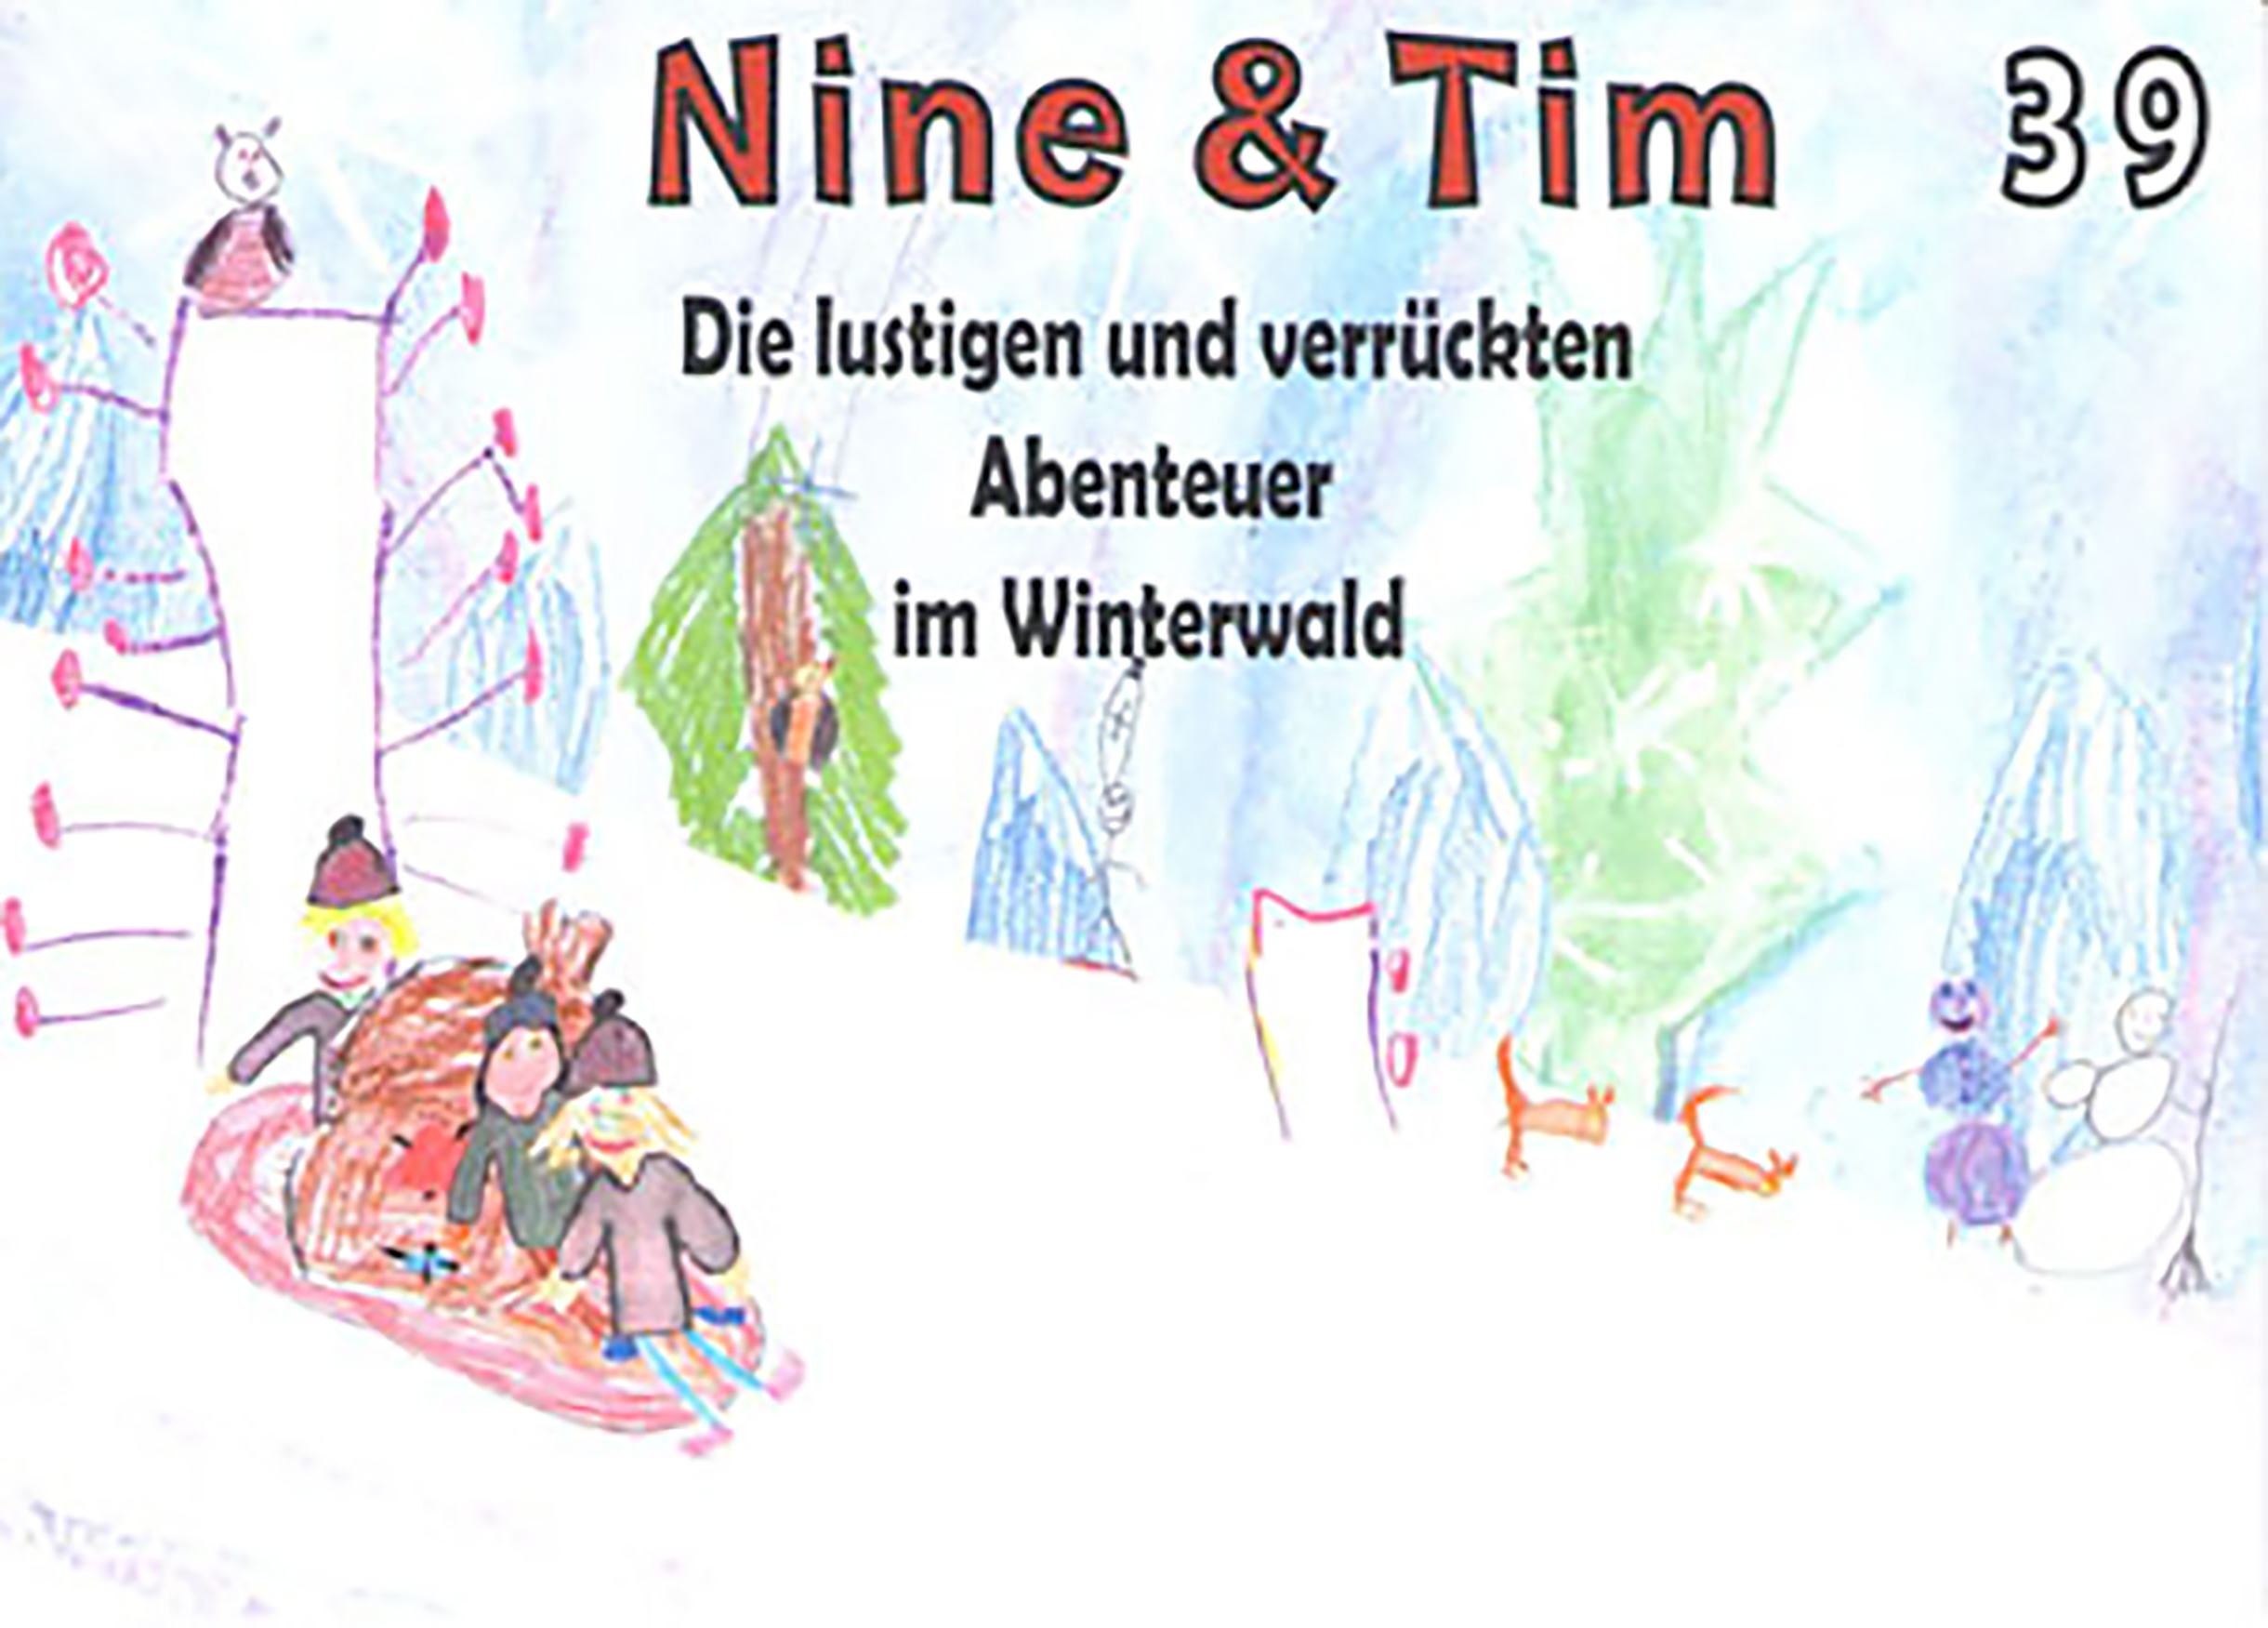 Das Bild zeigt ein Cover der Publikation Nine  Tim Heft 39